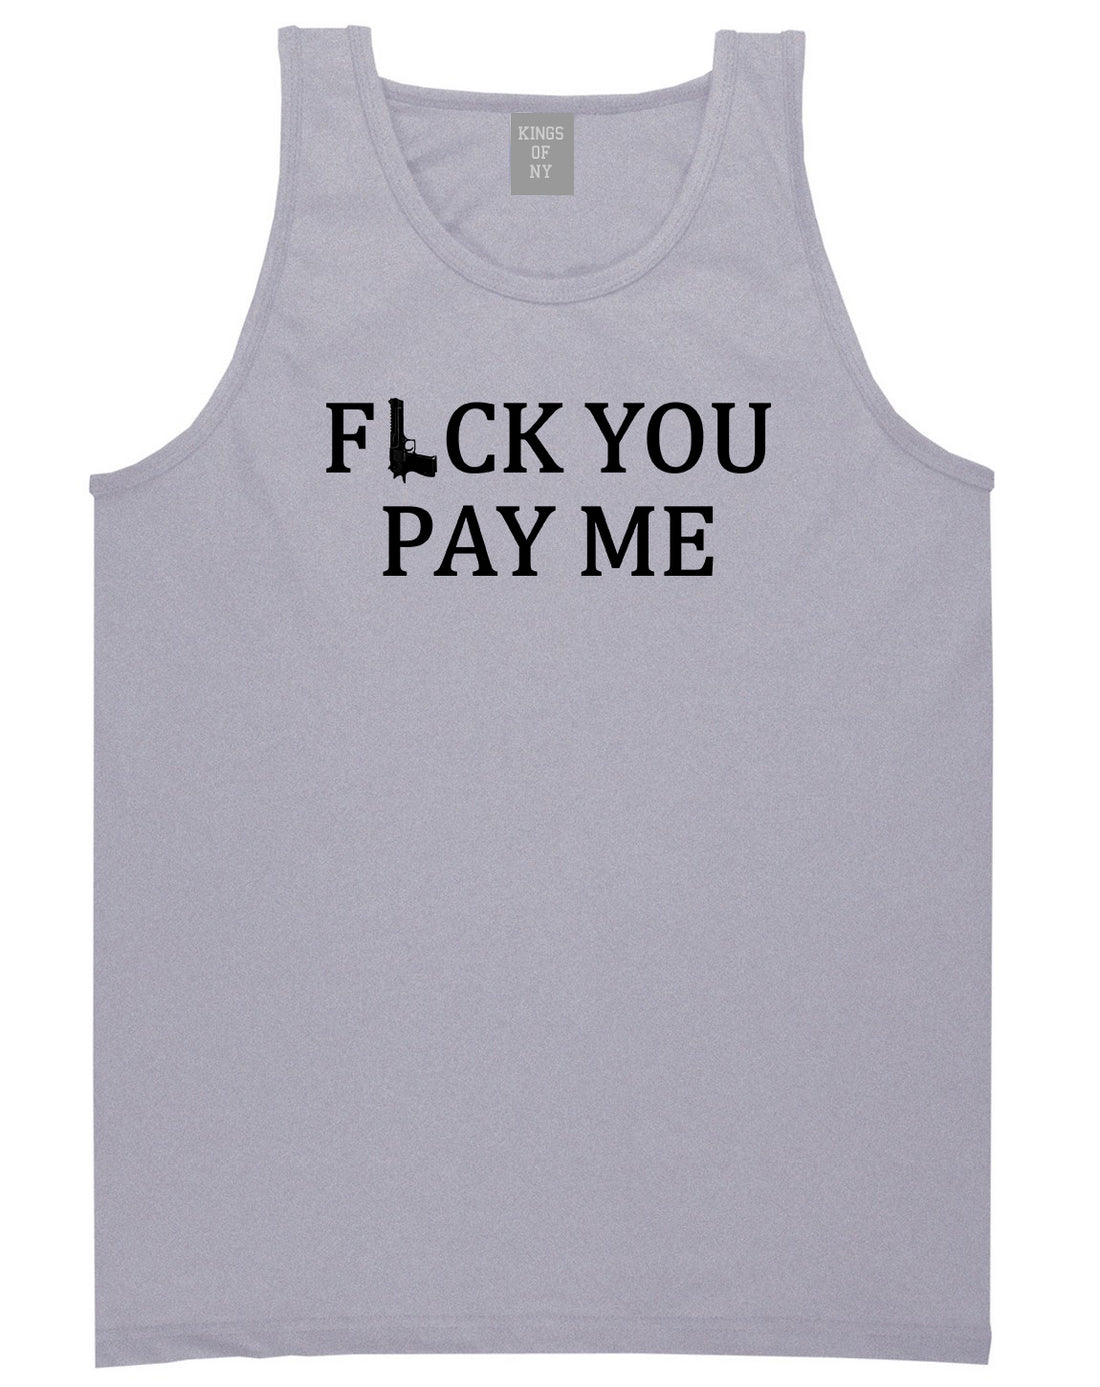 Fck You Pay Me Gun Mens Tank Top Shirt Grey by Kings Of NY